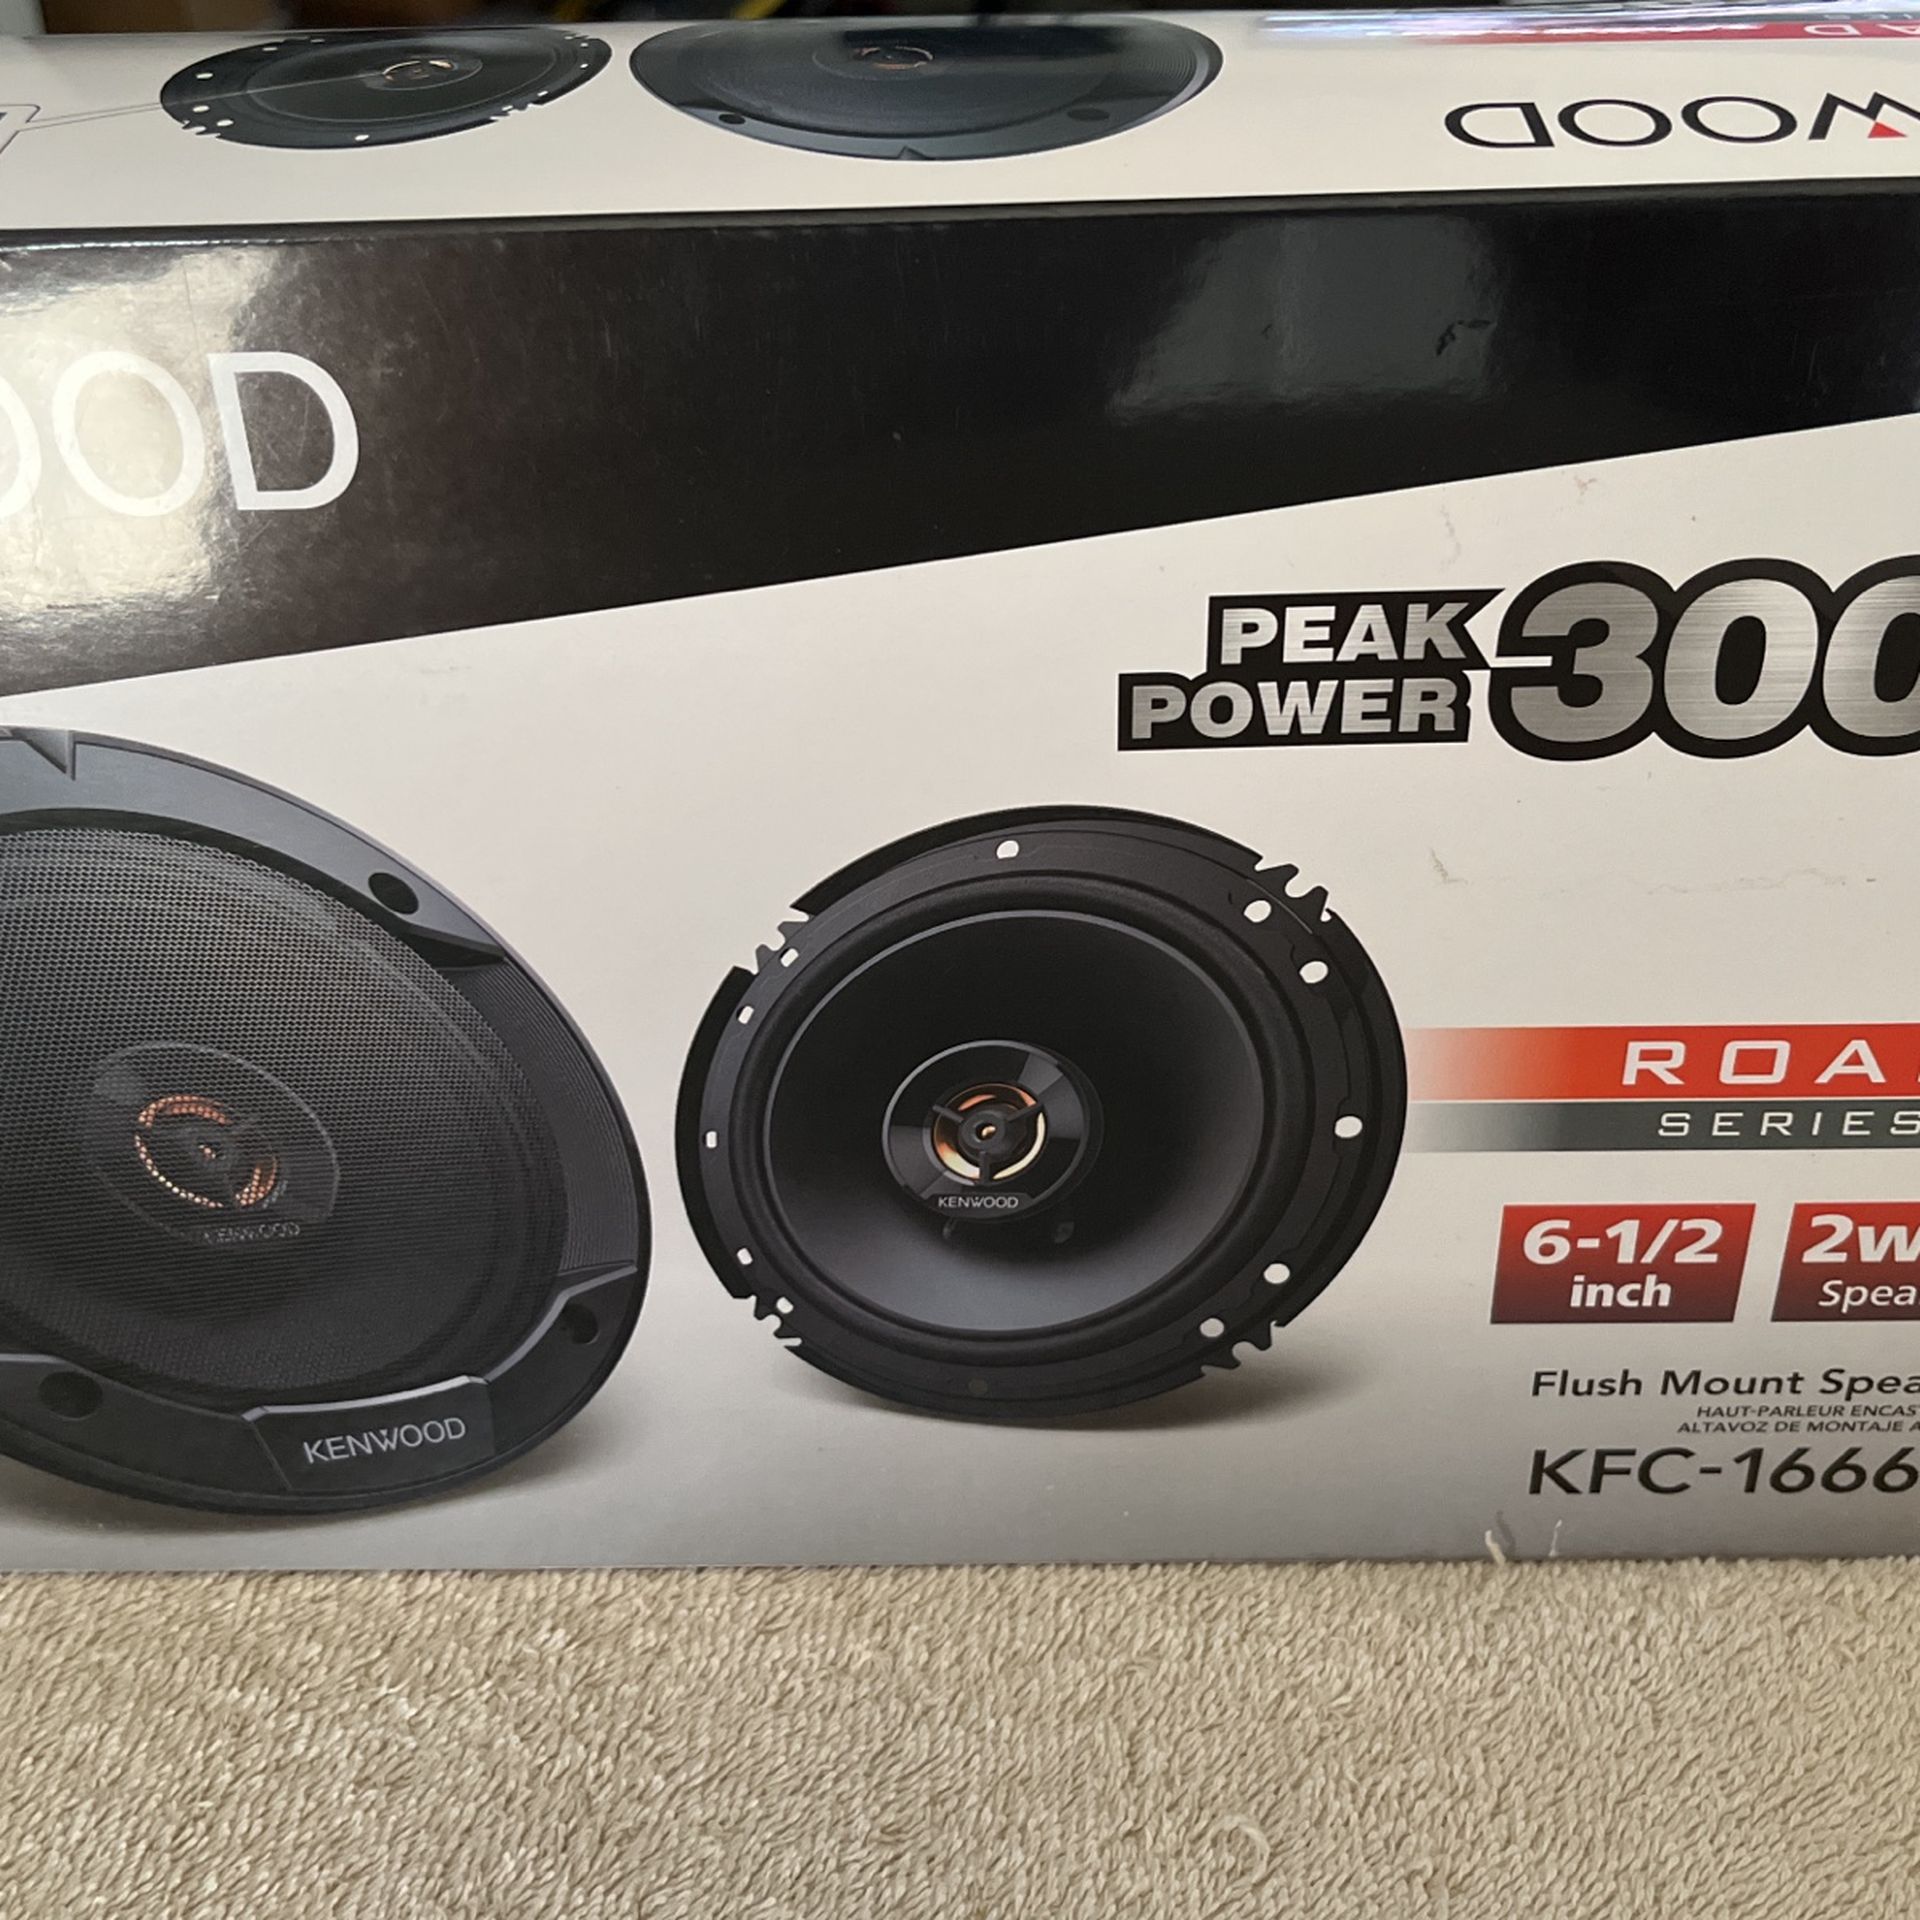 New KFC-1666R Road Series Car Speakers (Pair) - 6.5"  Speakers, 300